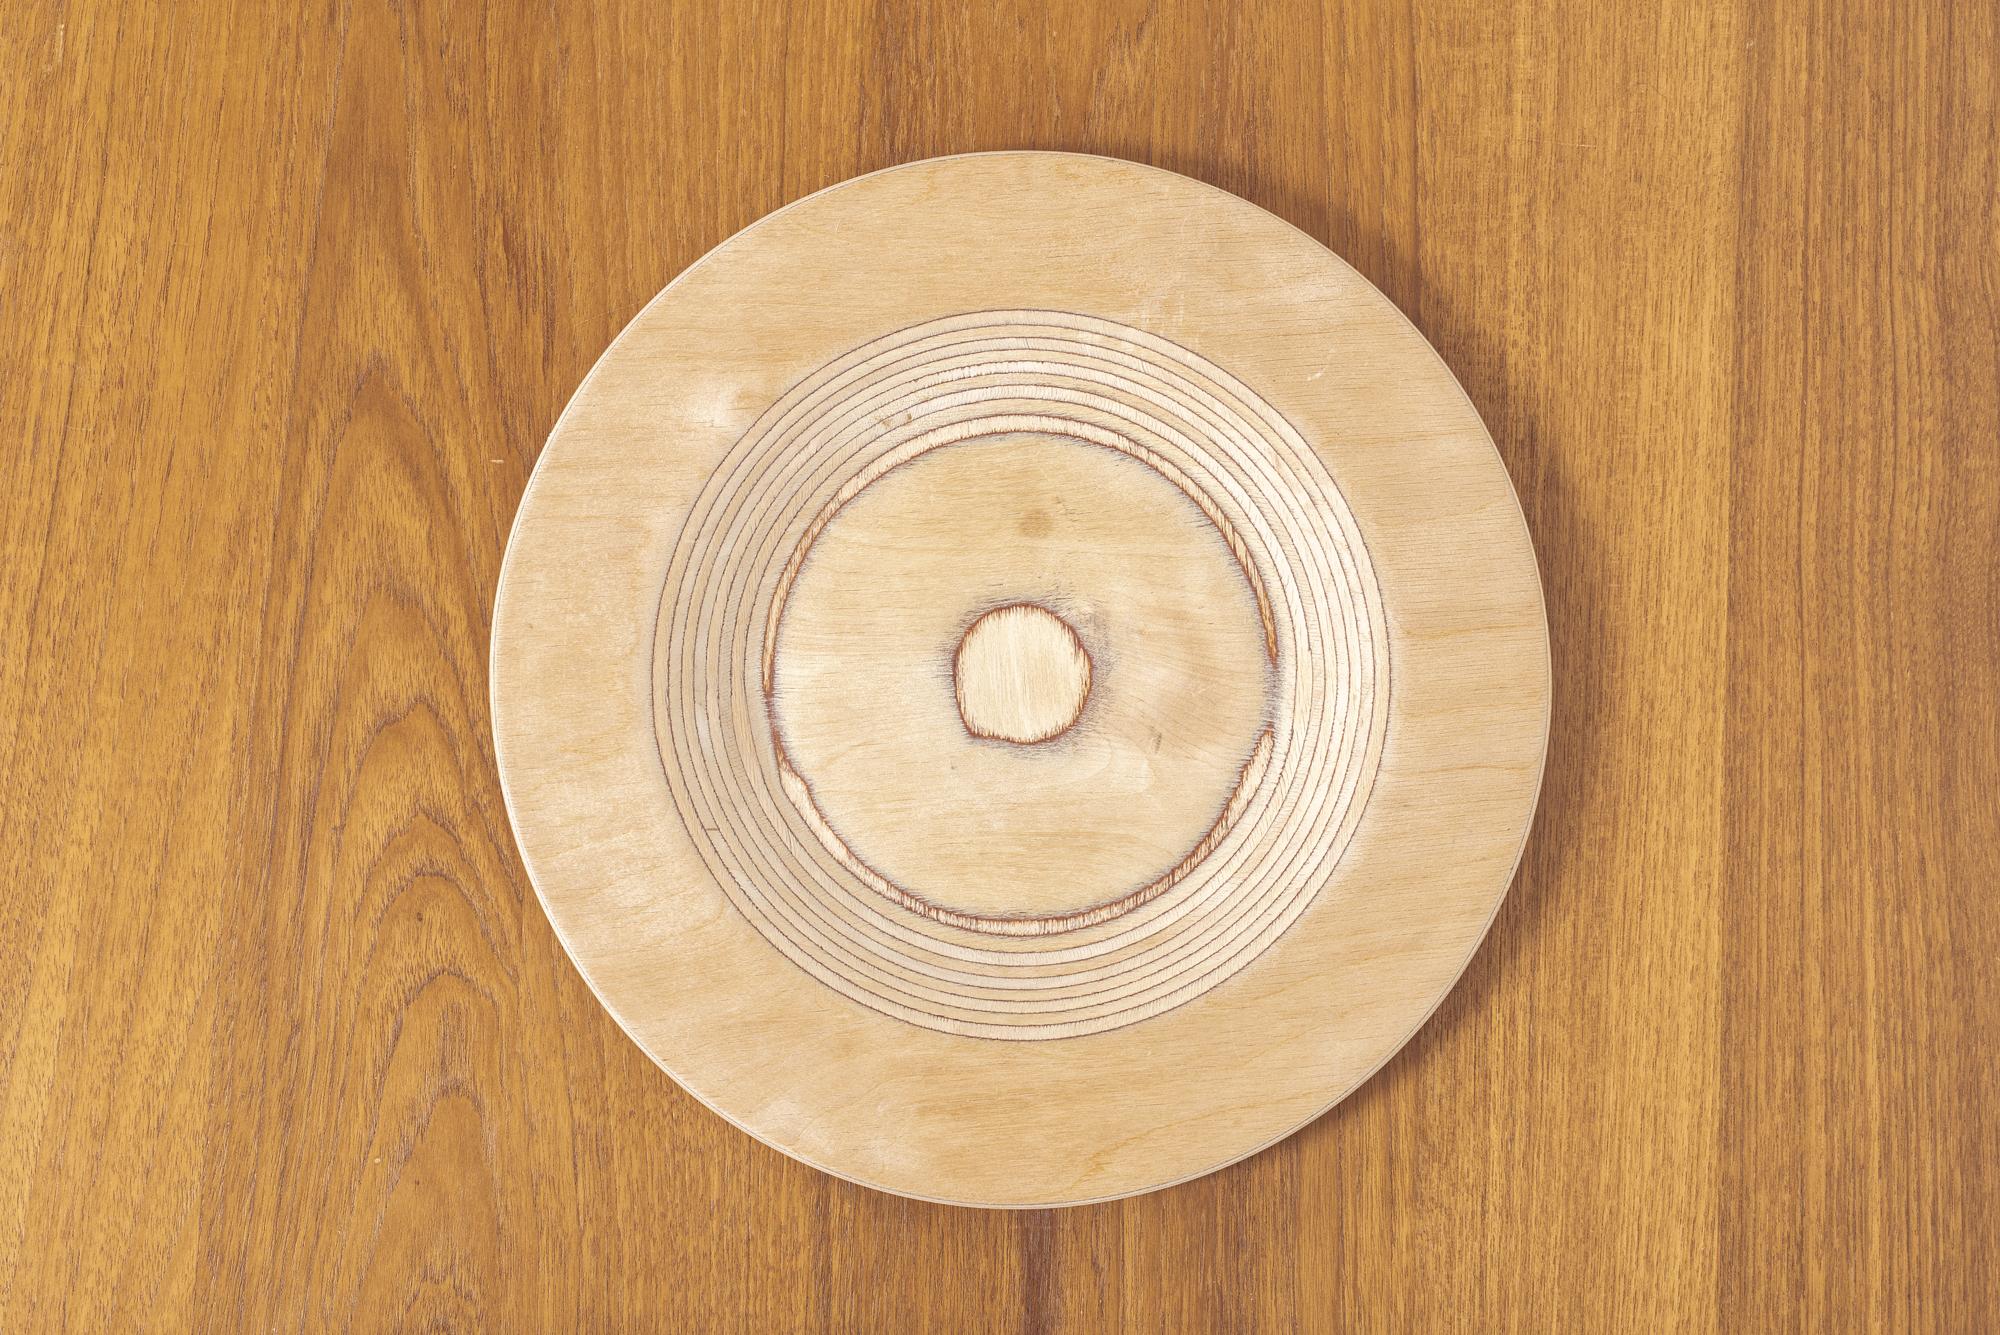 Mid-20th Century Midcentury Finnish Modern Wooden Plates by Saarinen for Keuruu